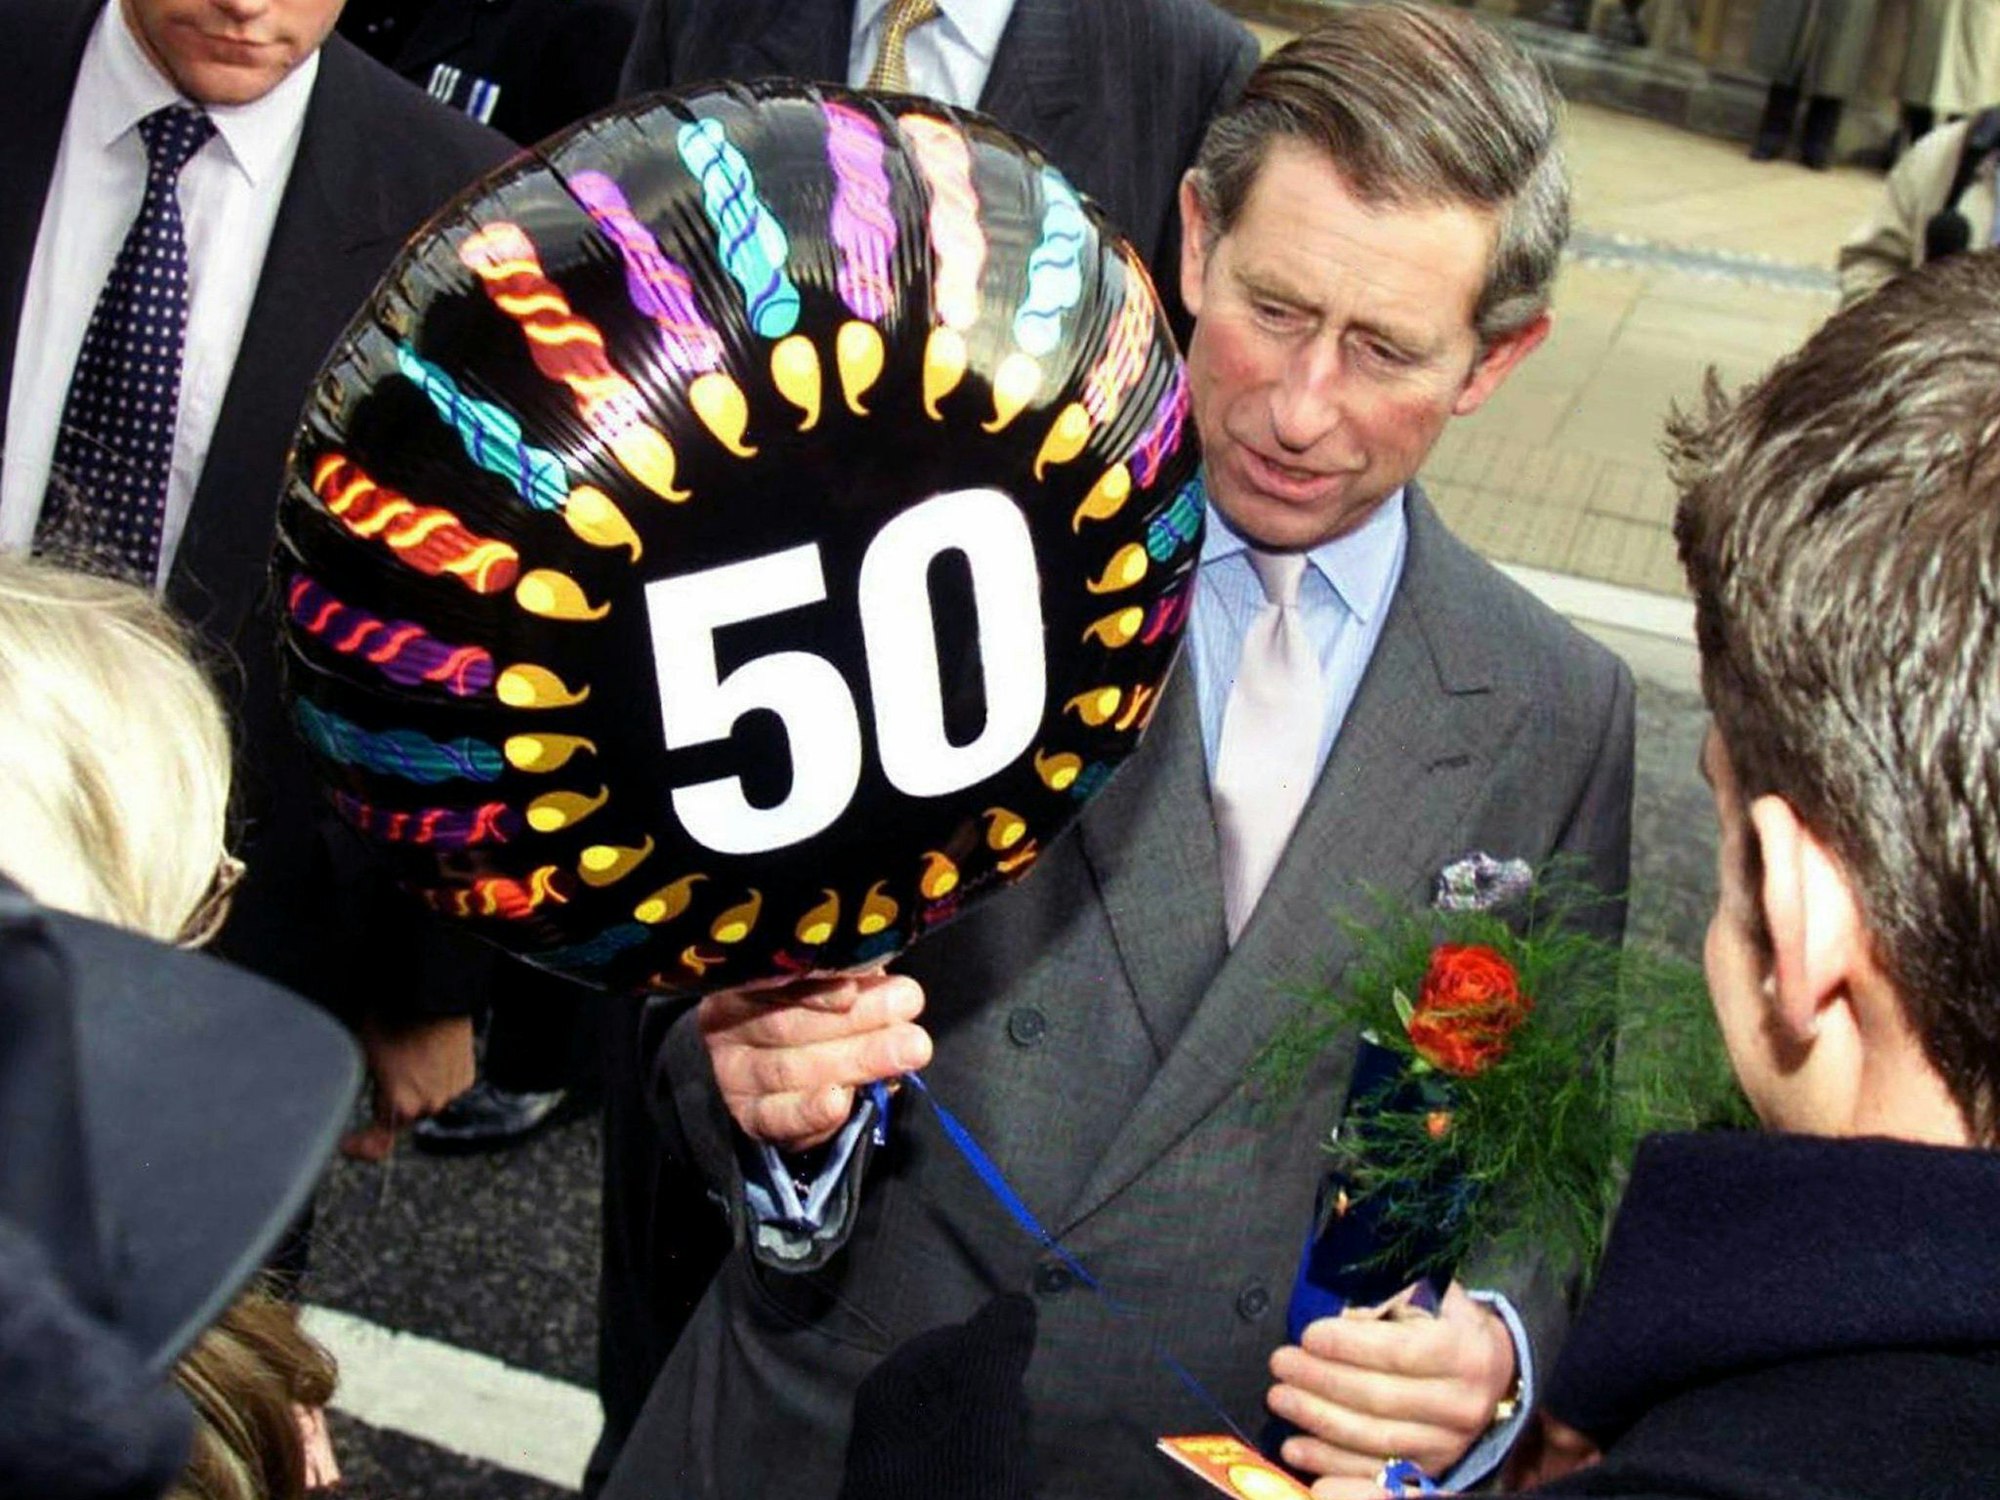 Der Prinz von Wales mit einem 50-Jahre-Geburtstag-Luftballon.